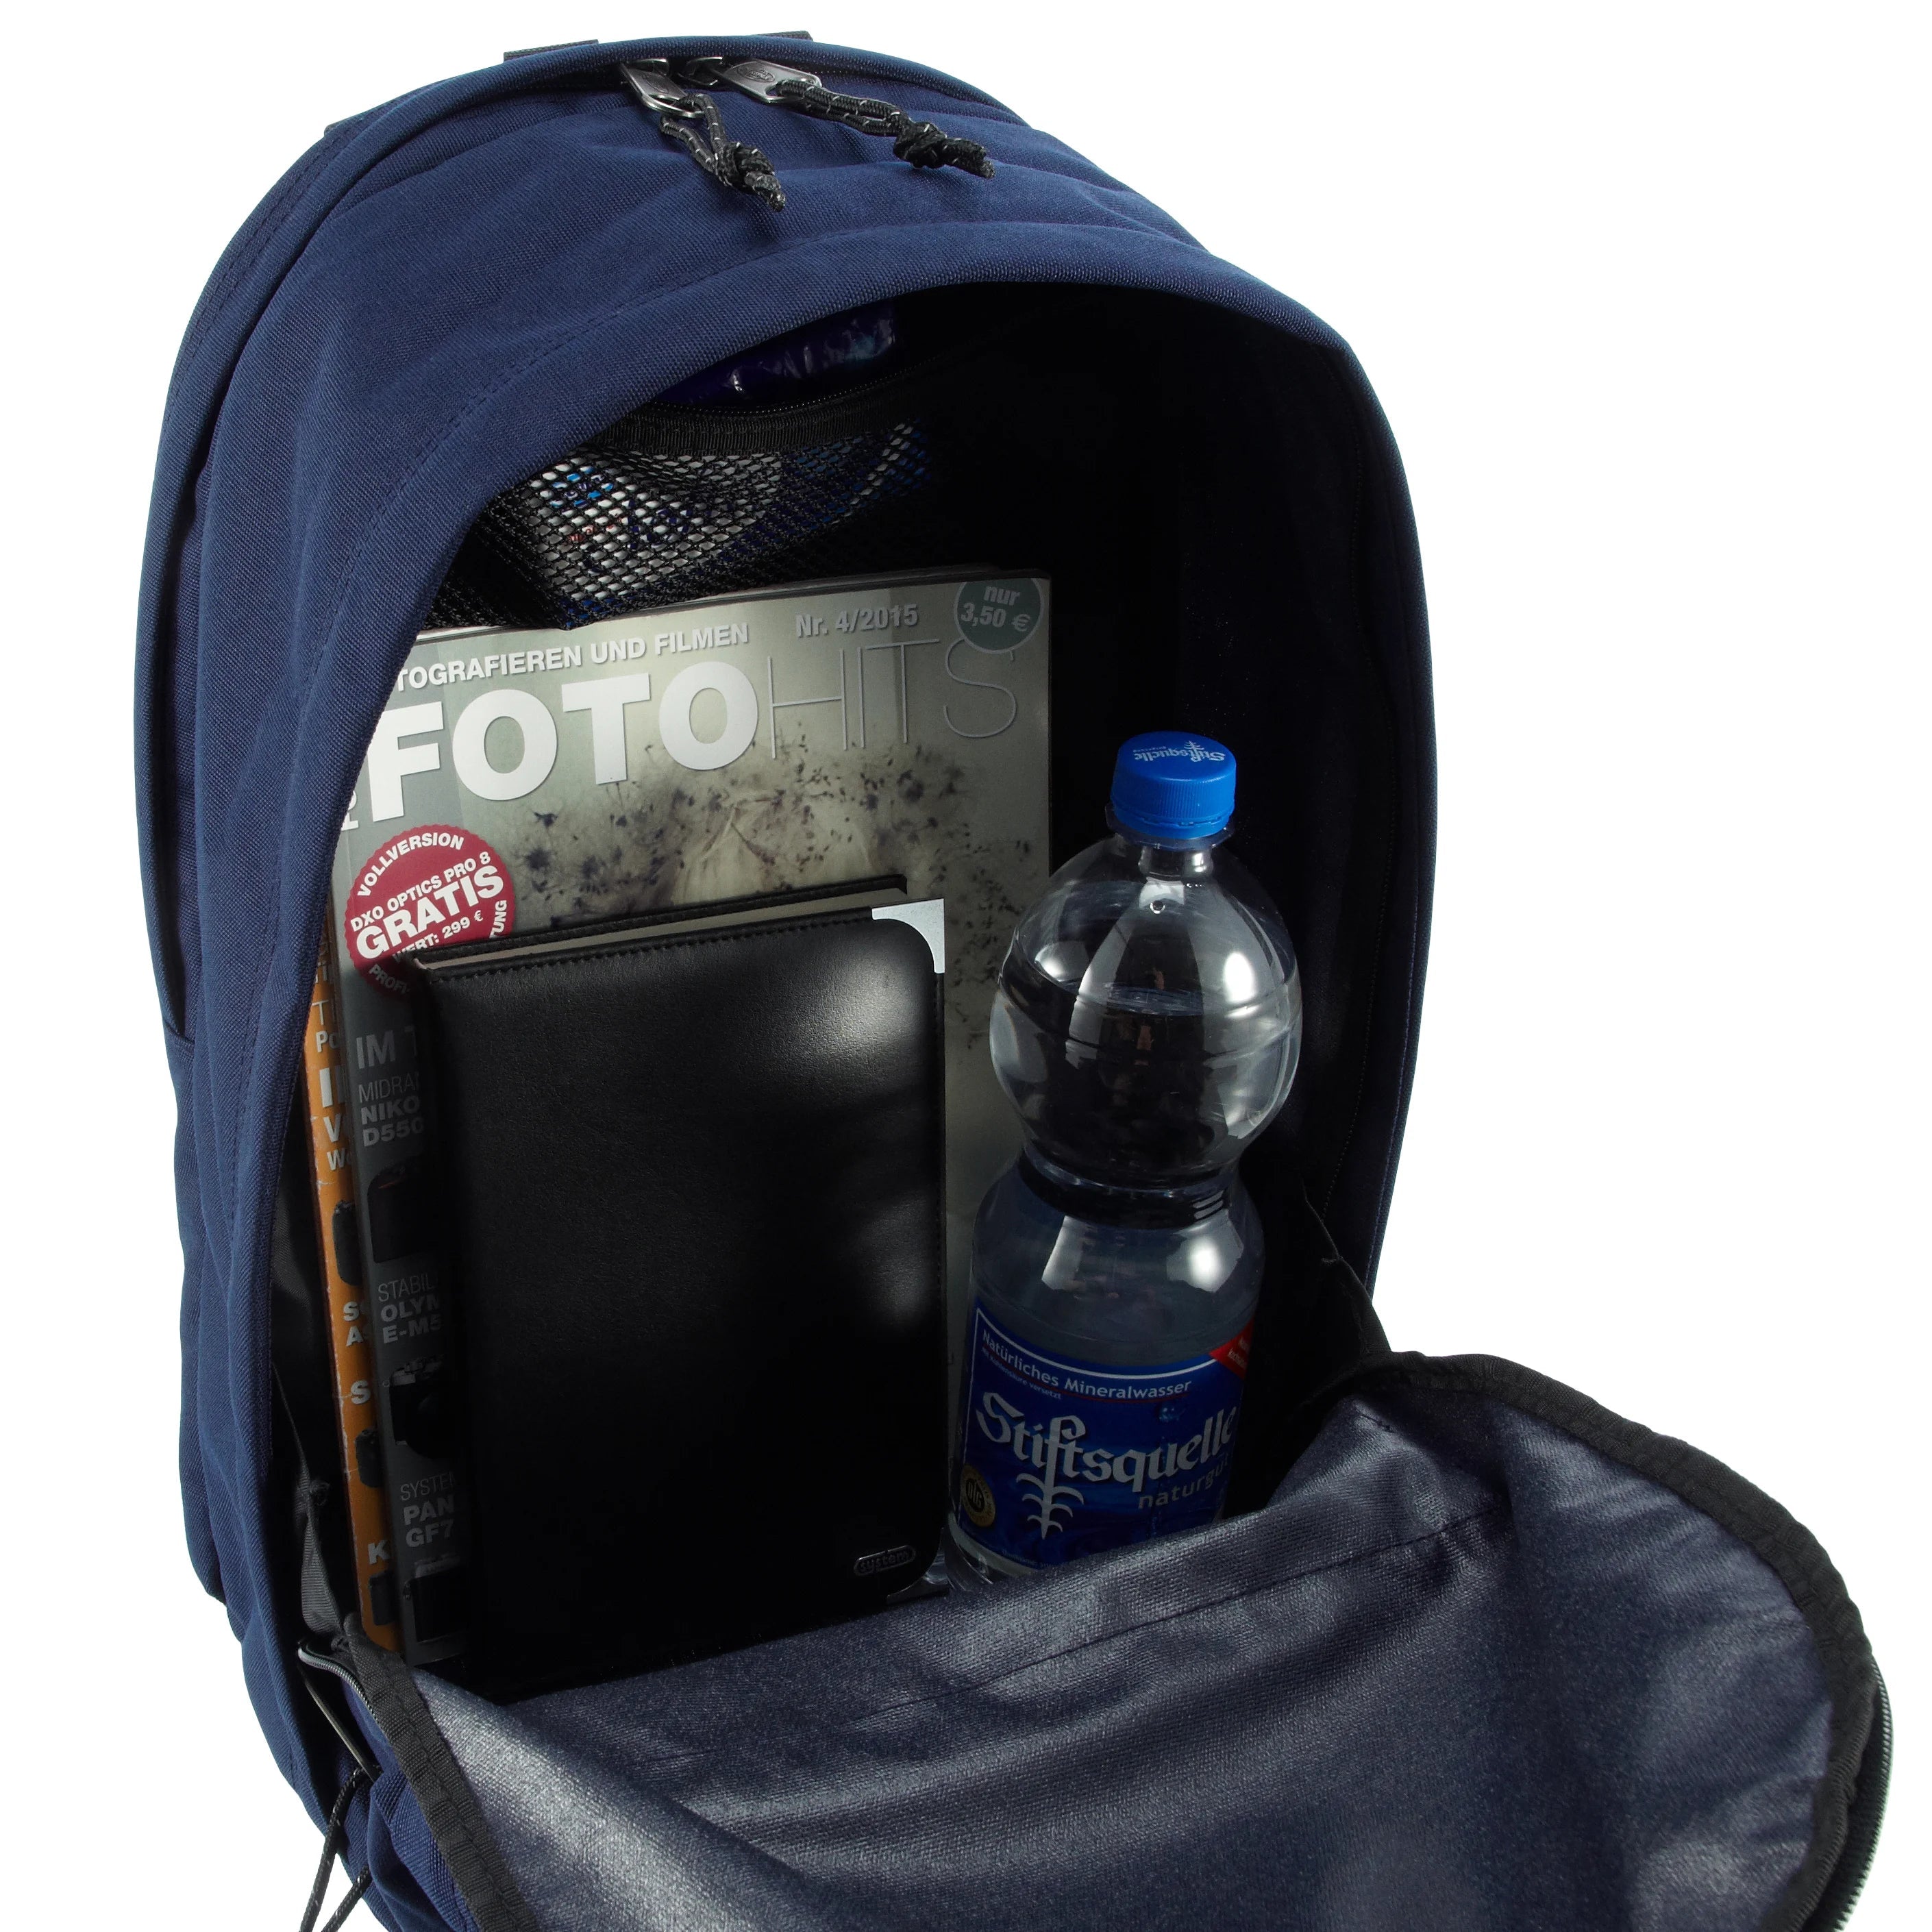 Eastpak Authentic Back to Work sac à dos avec compartiment ordinateur 43 cm - triple denim